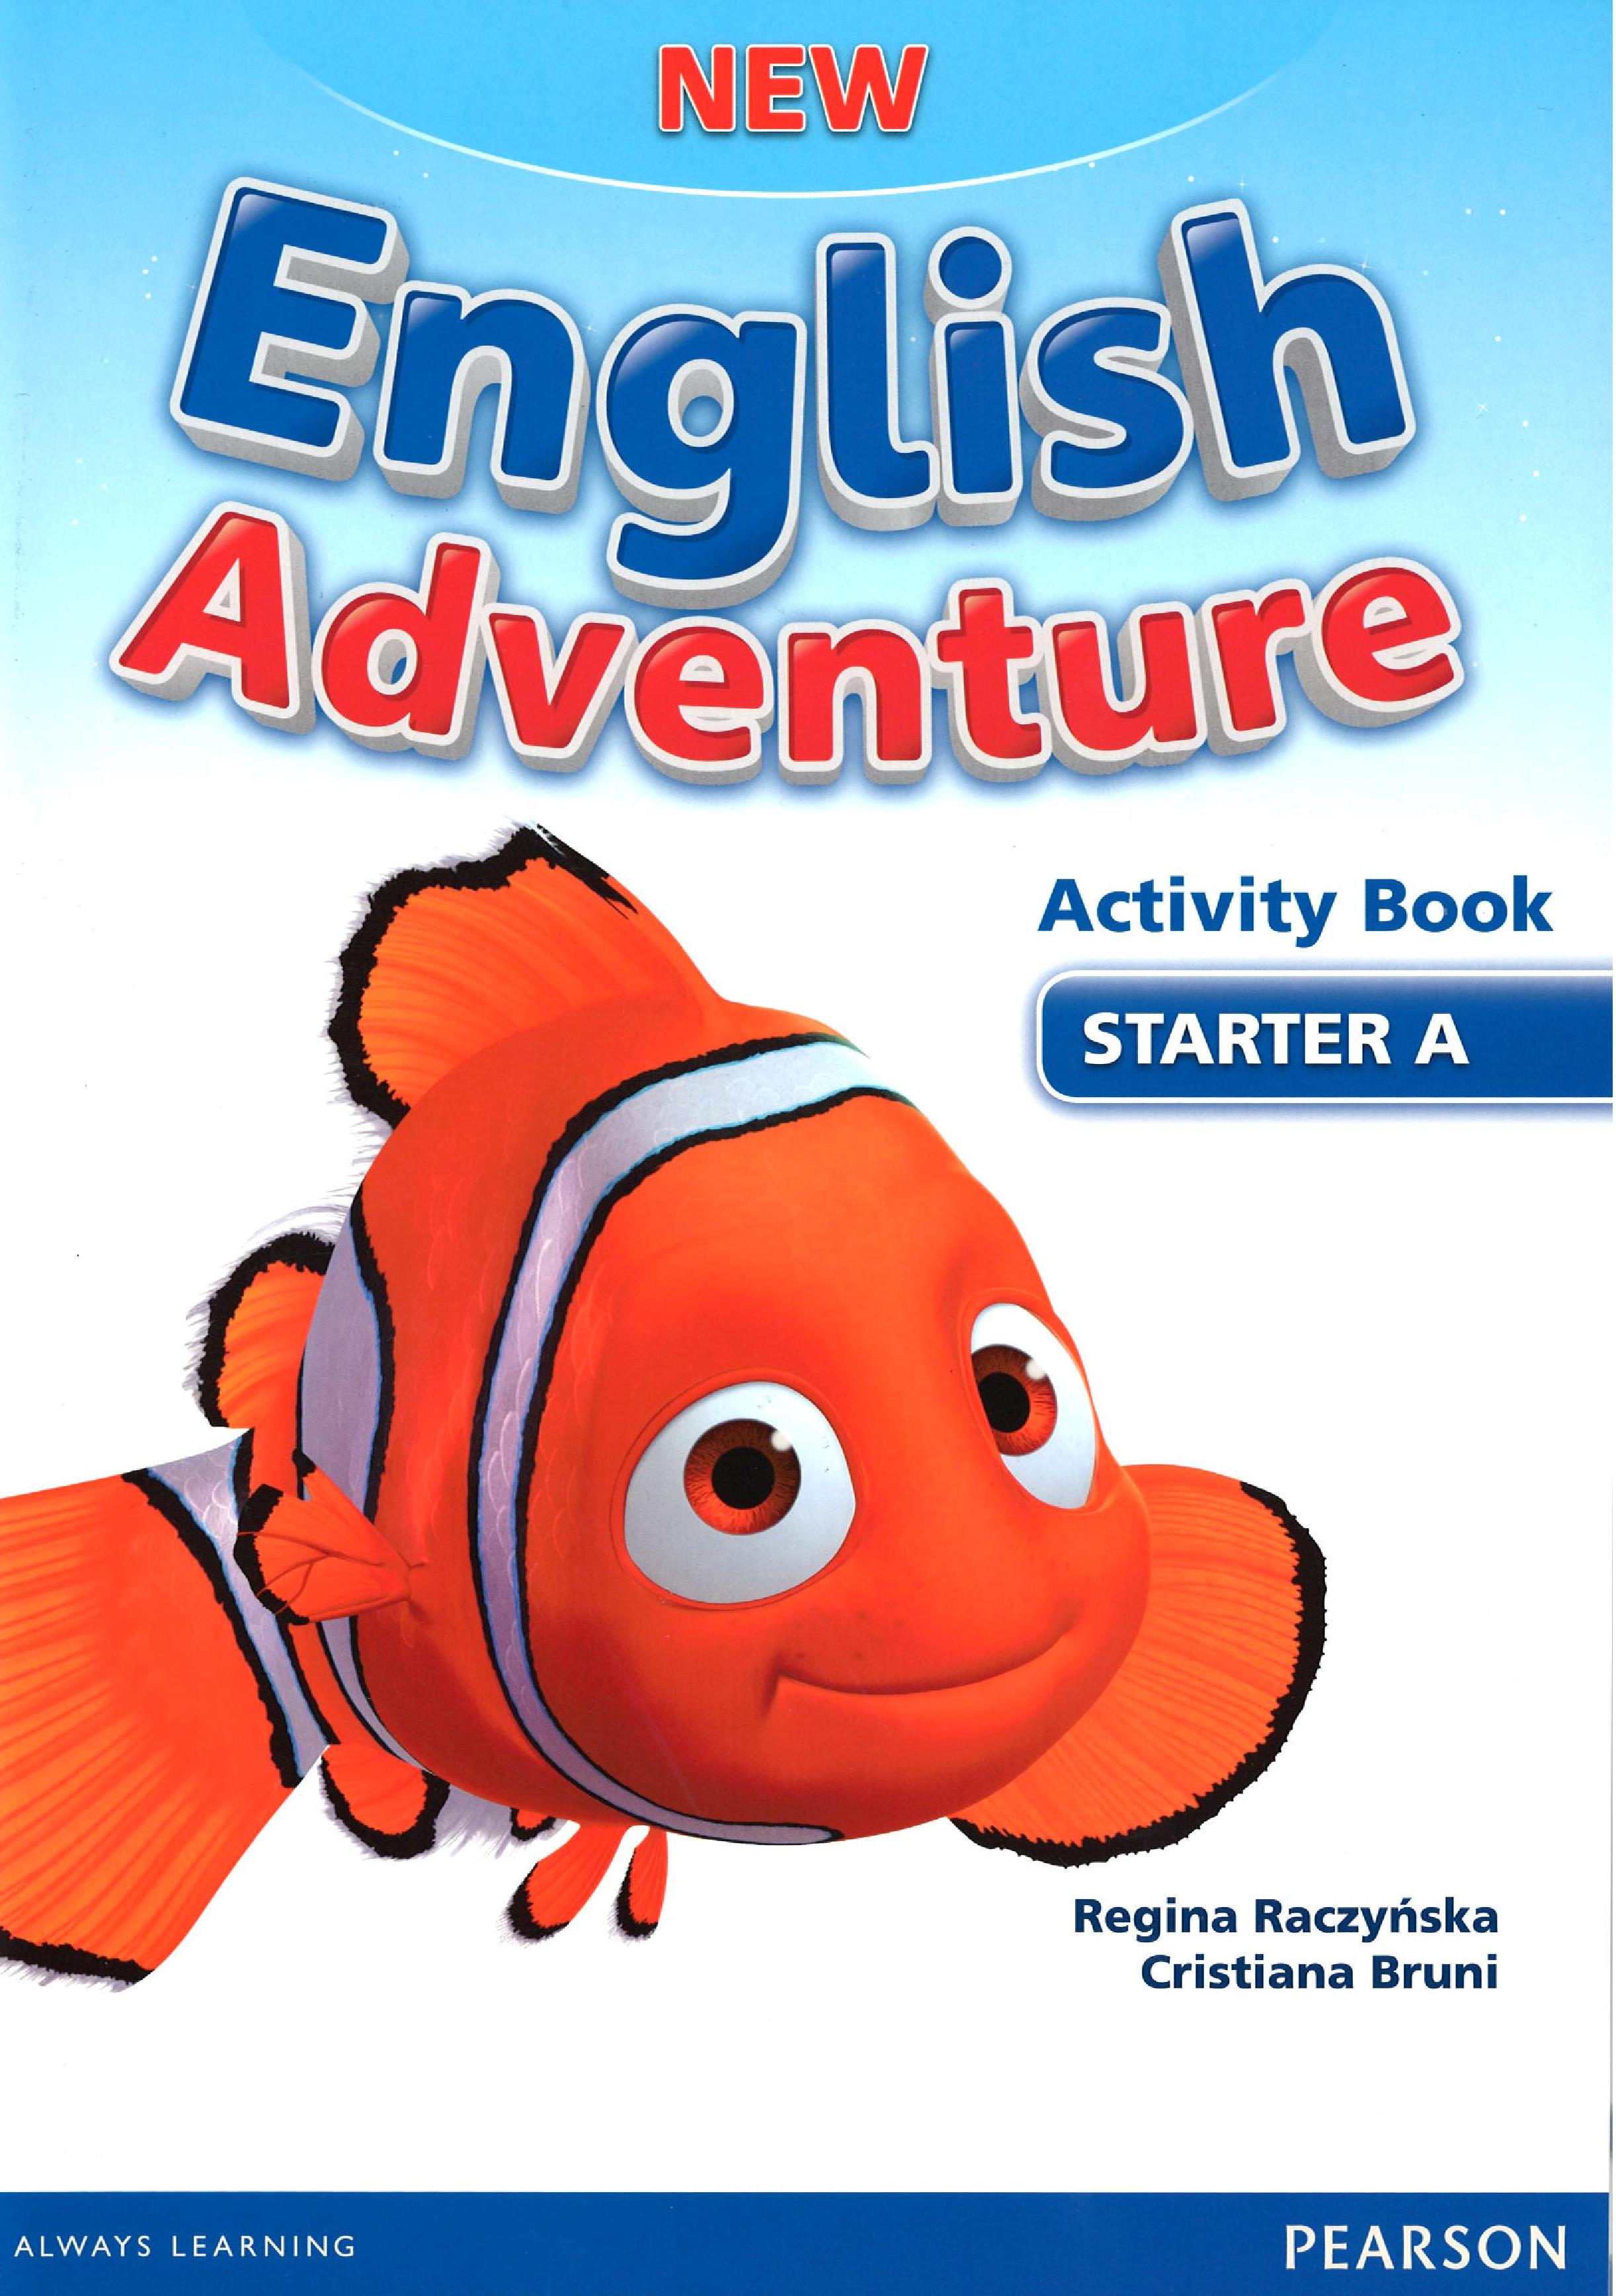 Приключенческий на английском. New English Adventure Starter a. English Adventure Starter a activity book. New English Adventure activity book. English Adventure Starter a отзывы.